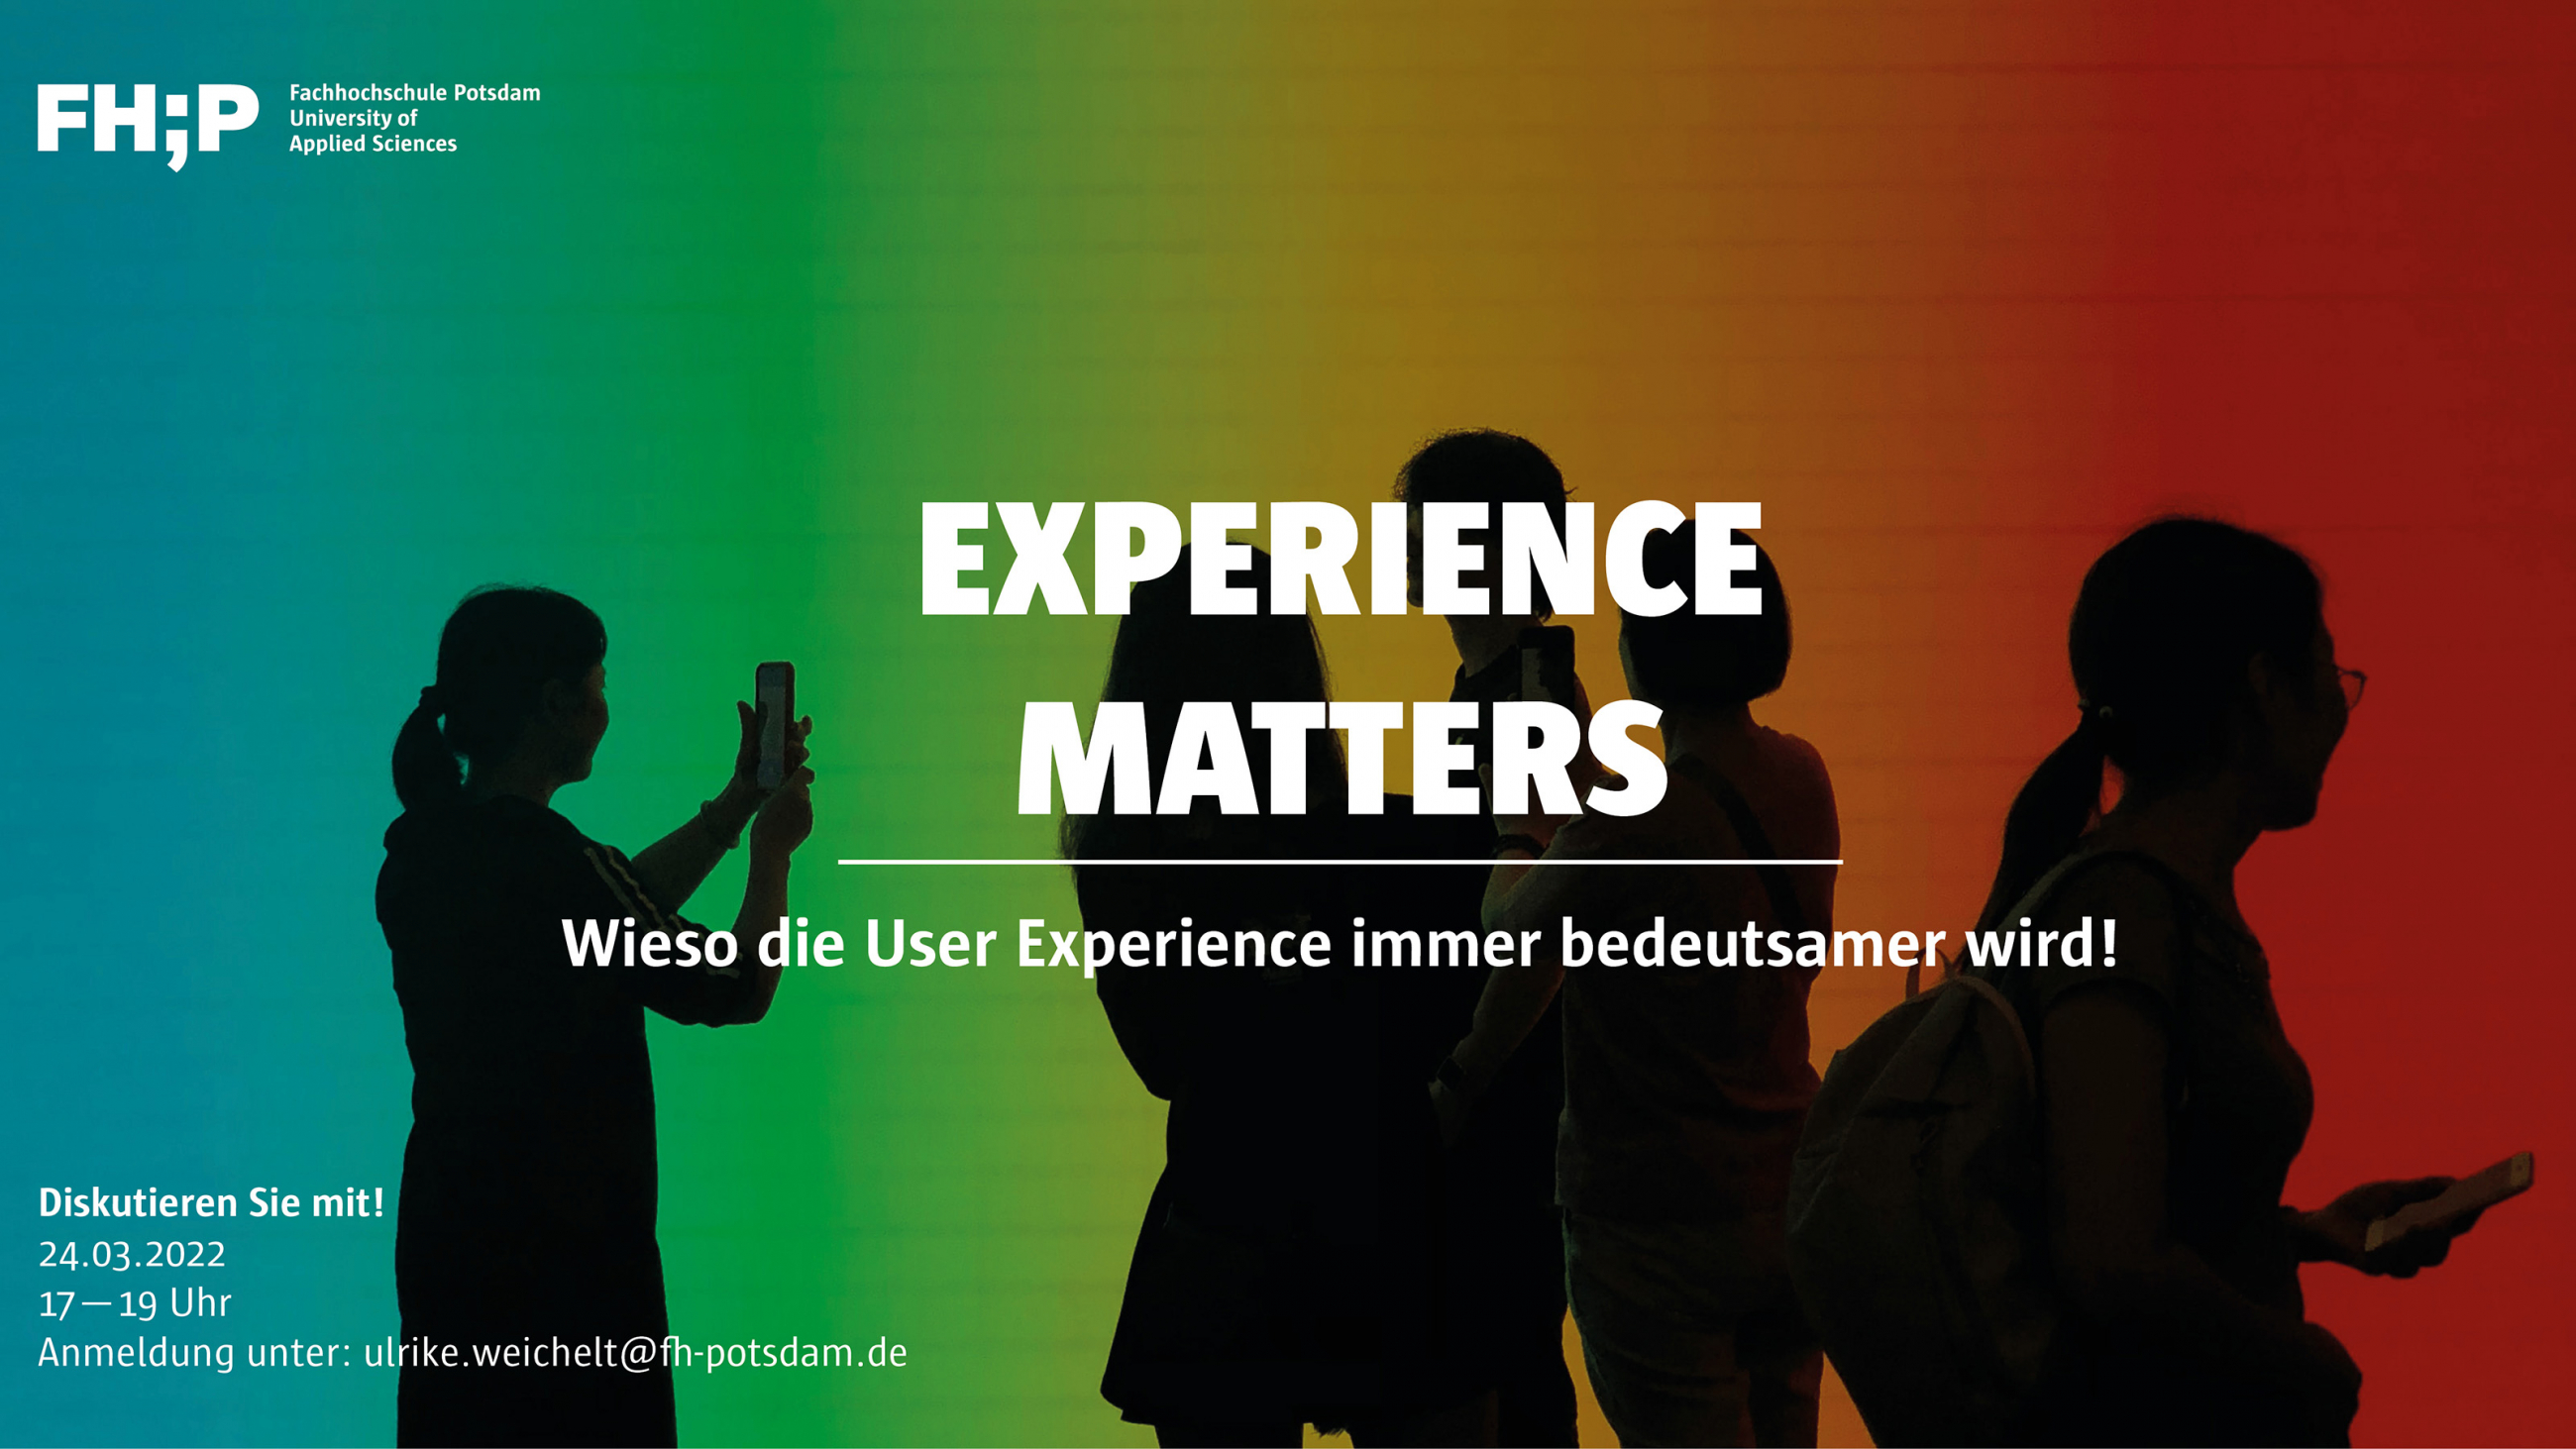 Personen mit Smartphones als schwarze Silhouetten vor buntem Hintergrund, Text: "Experience Matters"